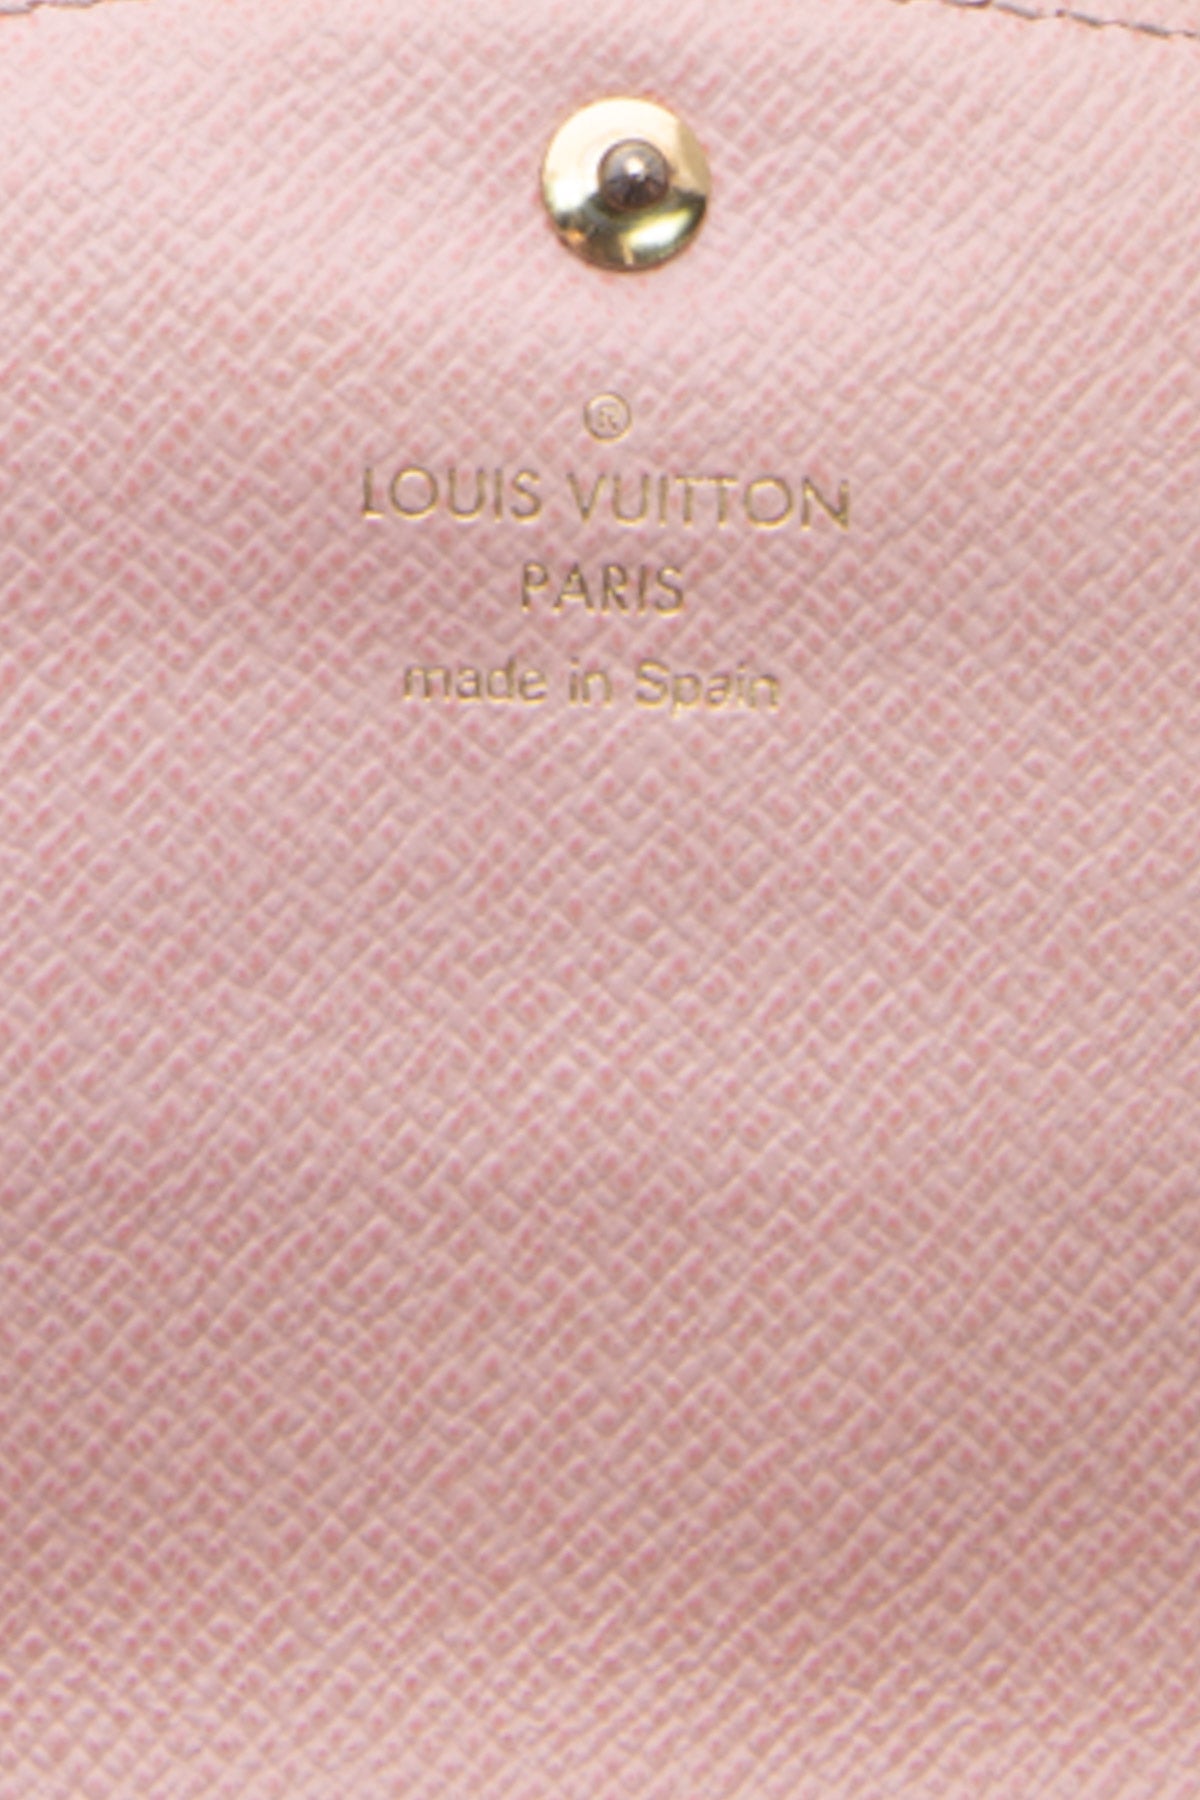 Louis Vuitton Caisa Wallet - Couture USA